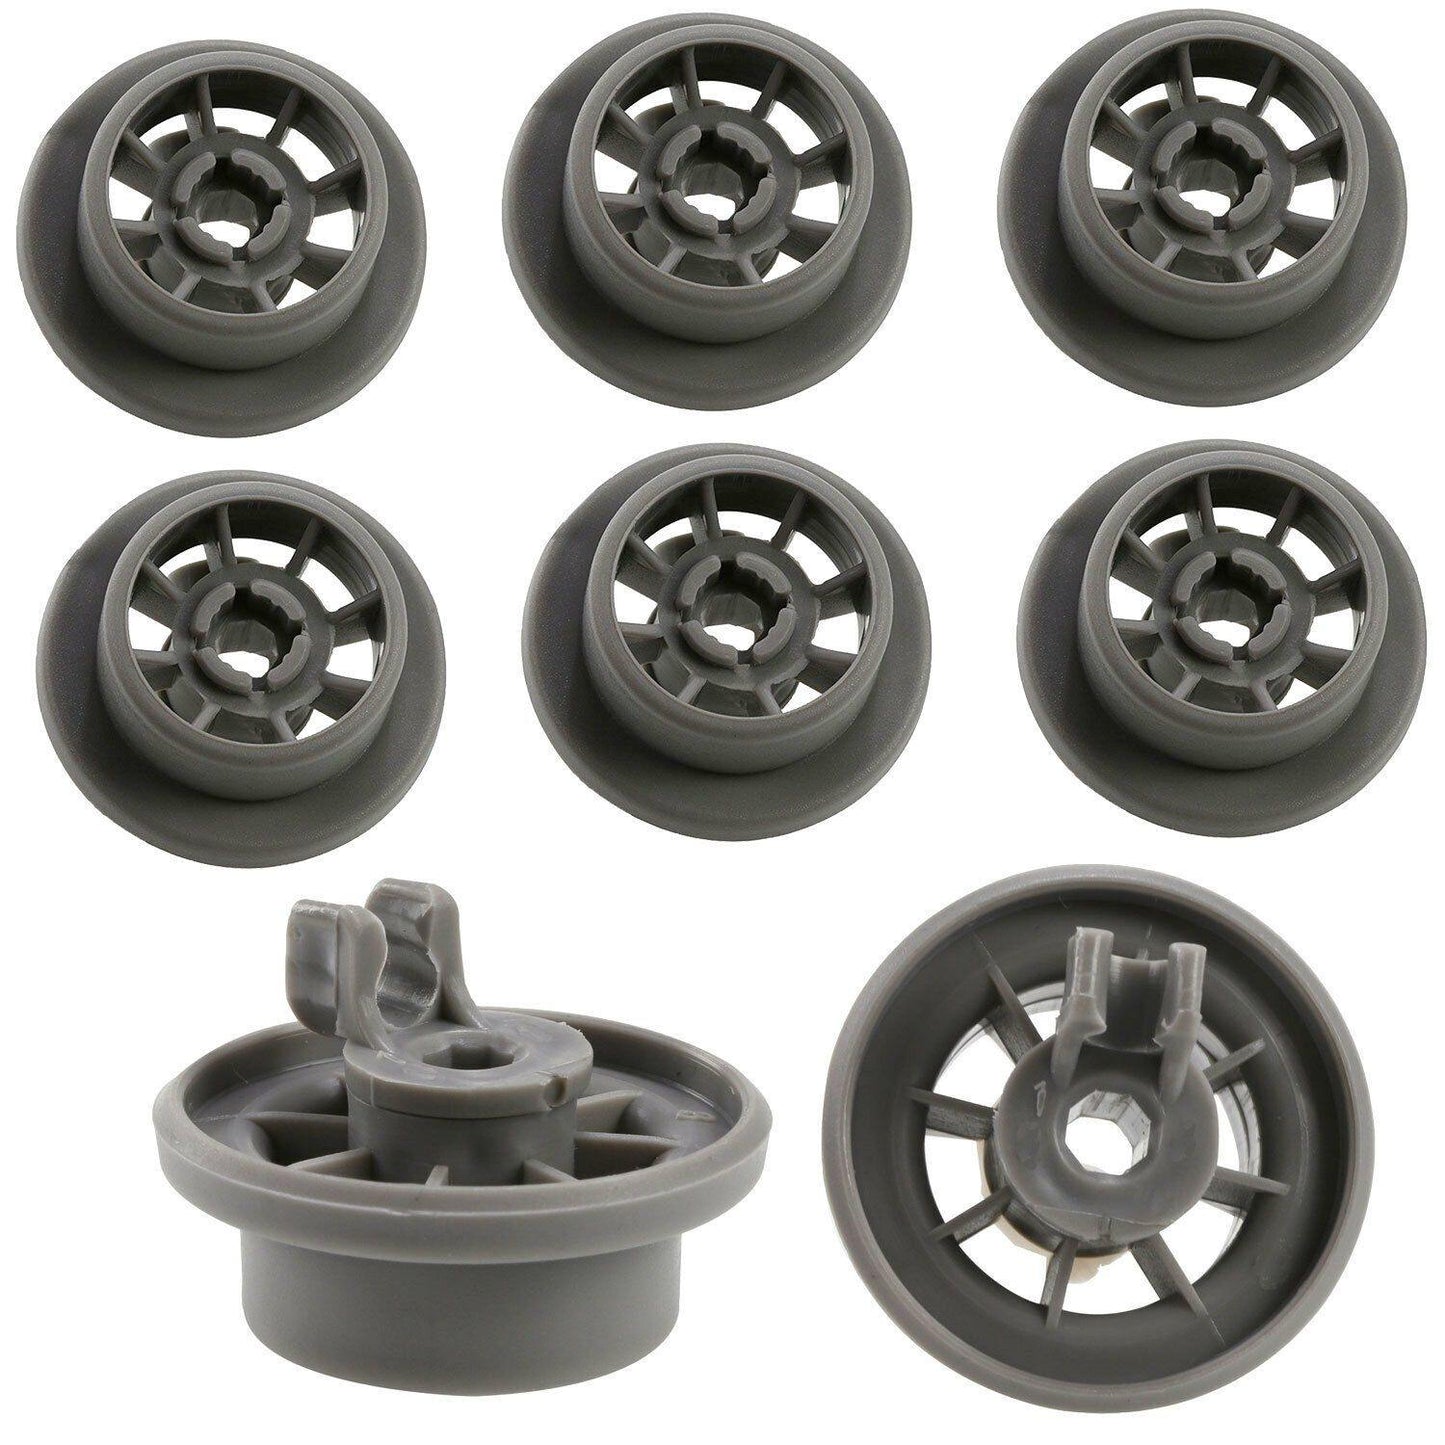 4X Diswasher Lower Bakset Wheel For Bosch SGU55E55AU86 SGI43A25AU43 SGV69T15AU18 Sparesbarn